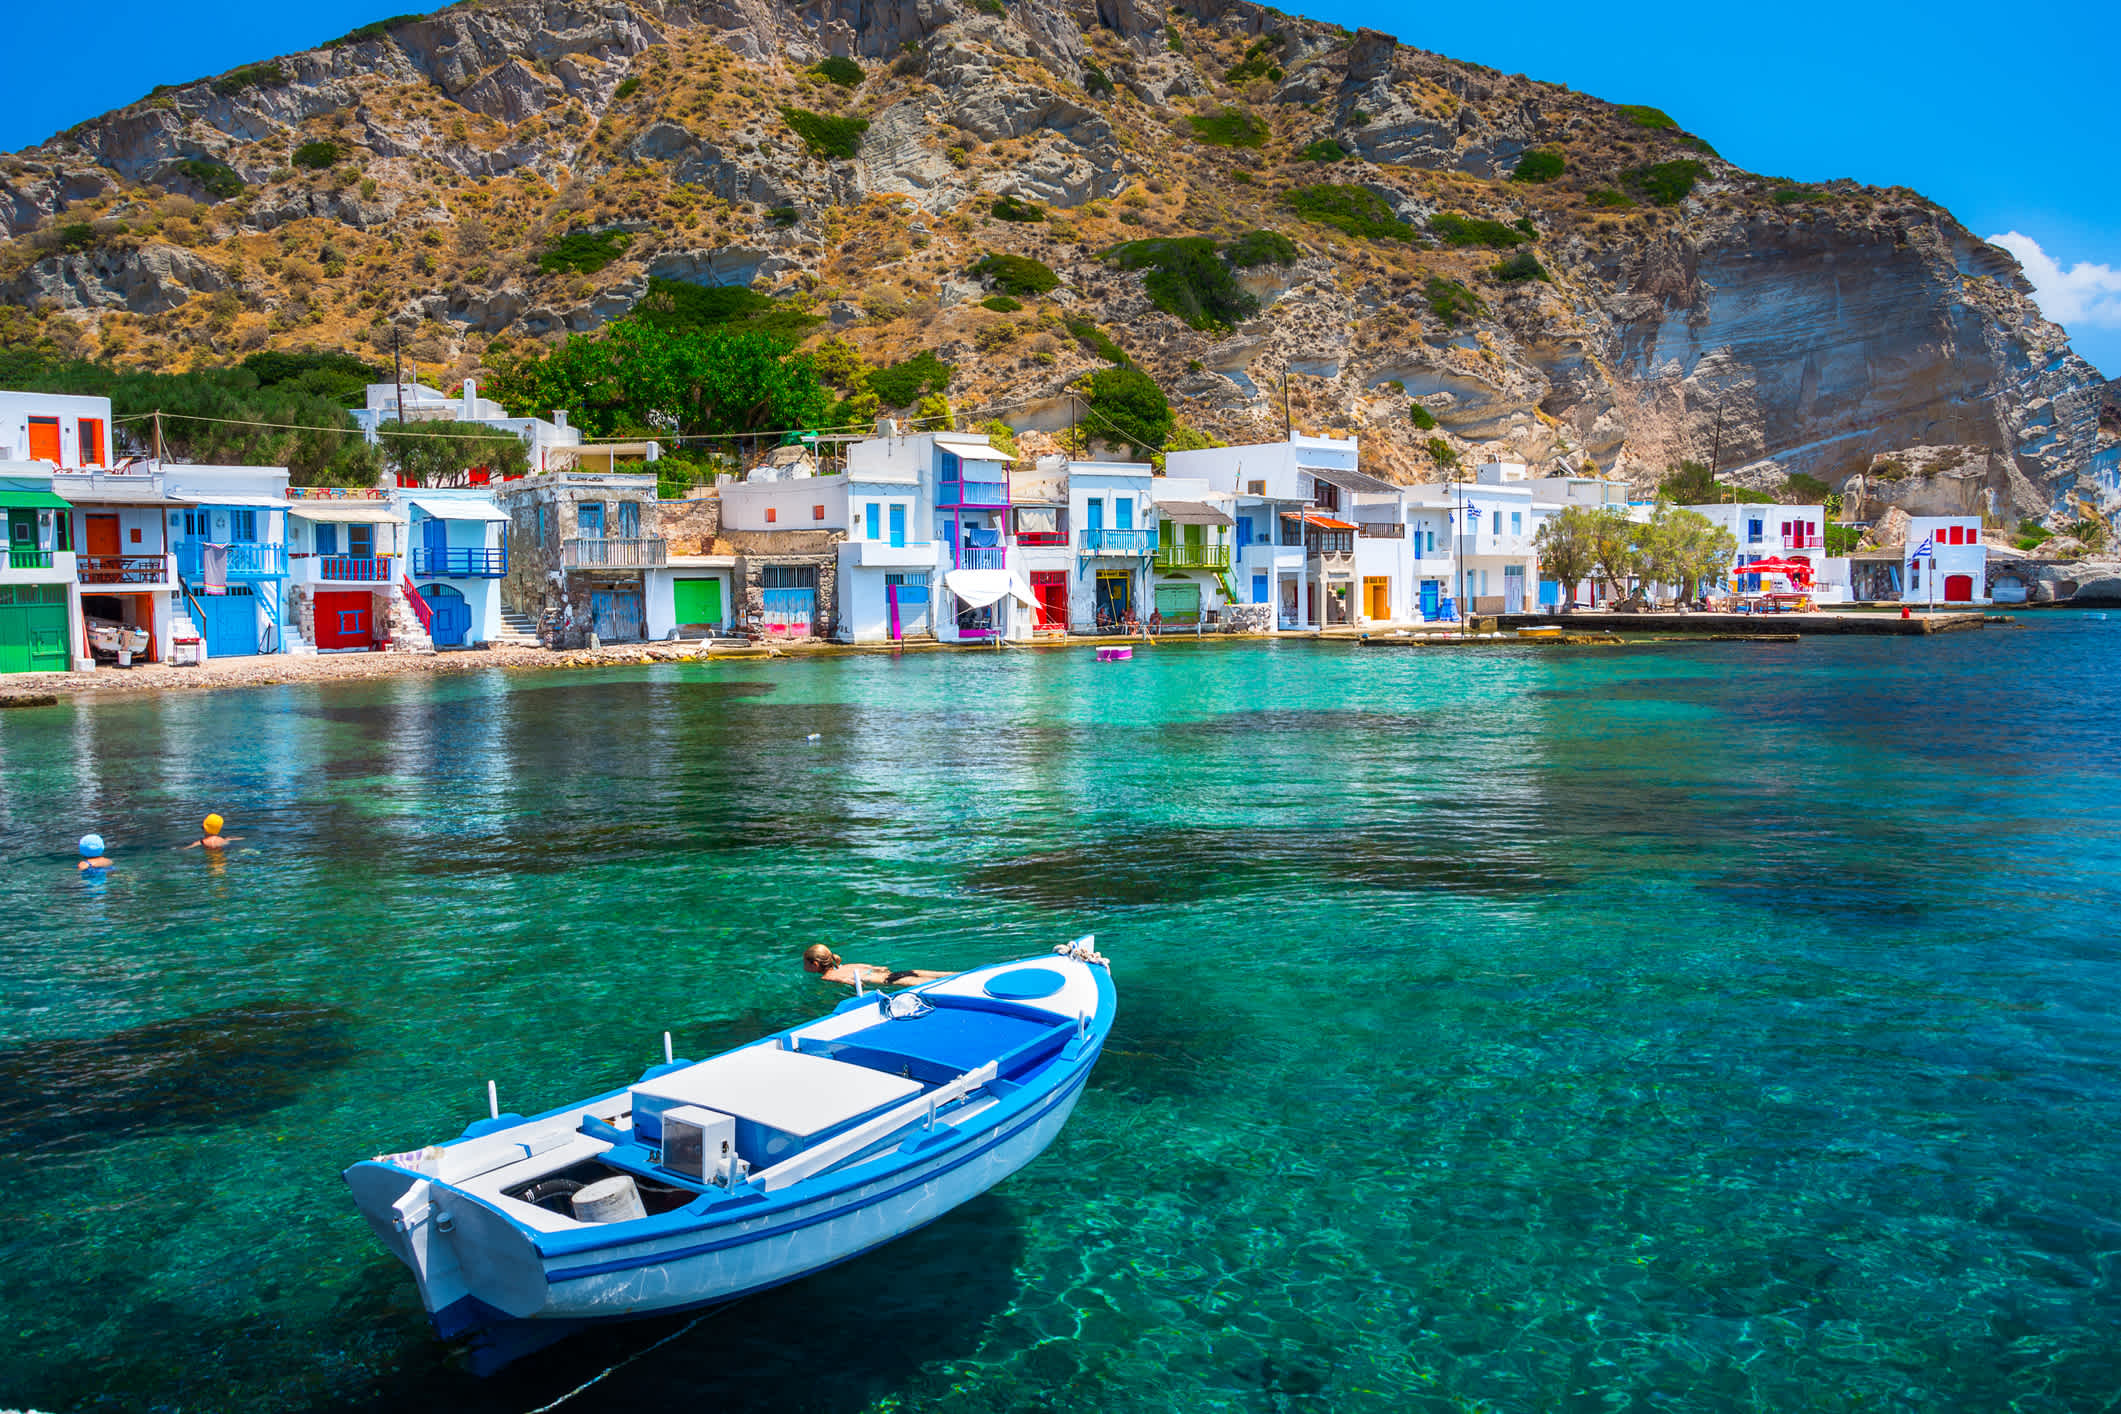 Maisons de village pittoresques Klima (village grec traditionnel en bord de mer, le style des Cyclades) avec des - pêcheurs traditionnels alignés, île de Milos, Cyclades, Grèce.